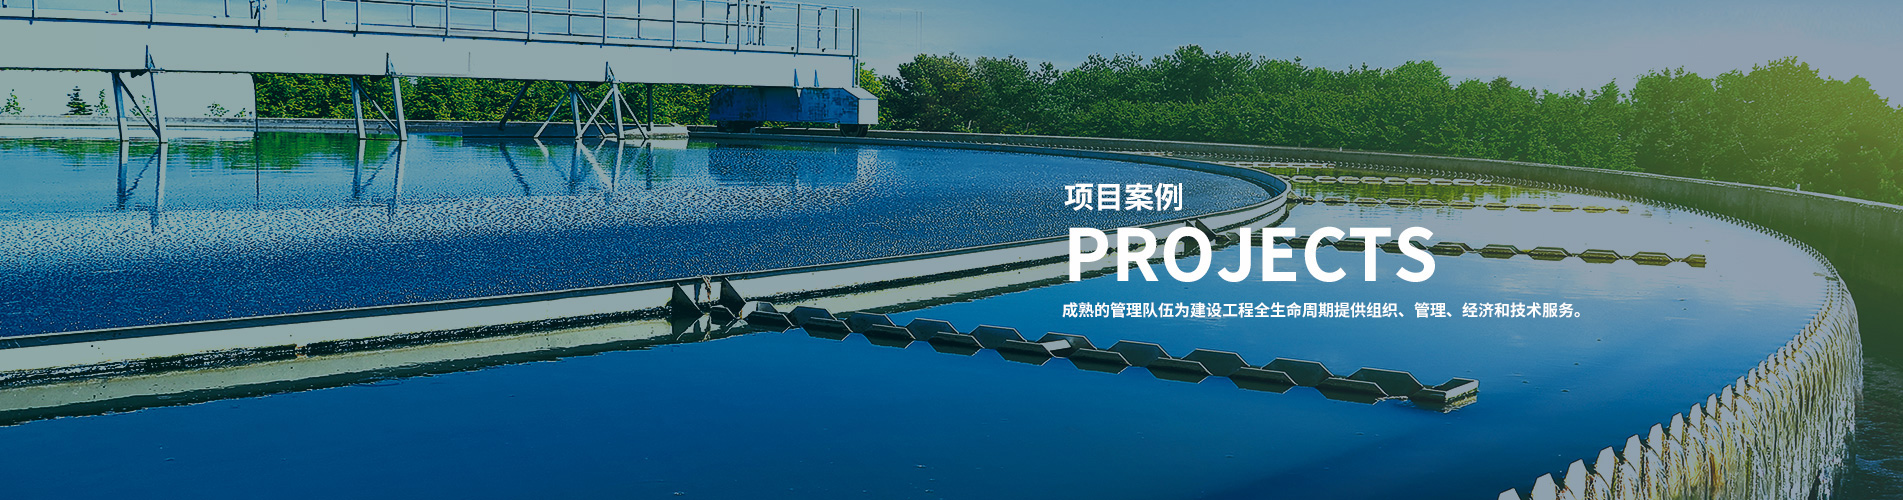 深圳污水处理厂设备,工业污水处理设备,污水处理厂工艺优化